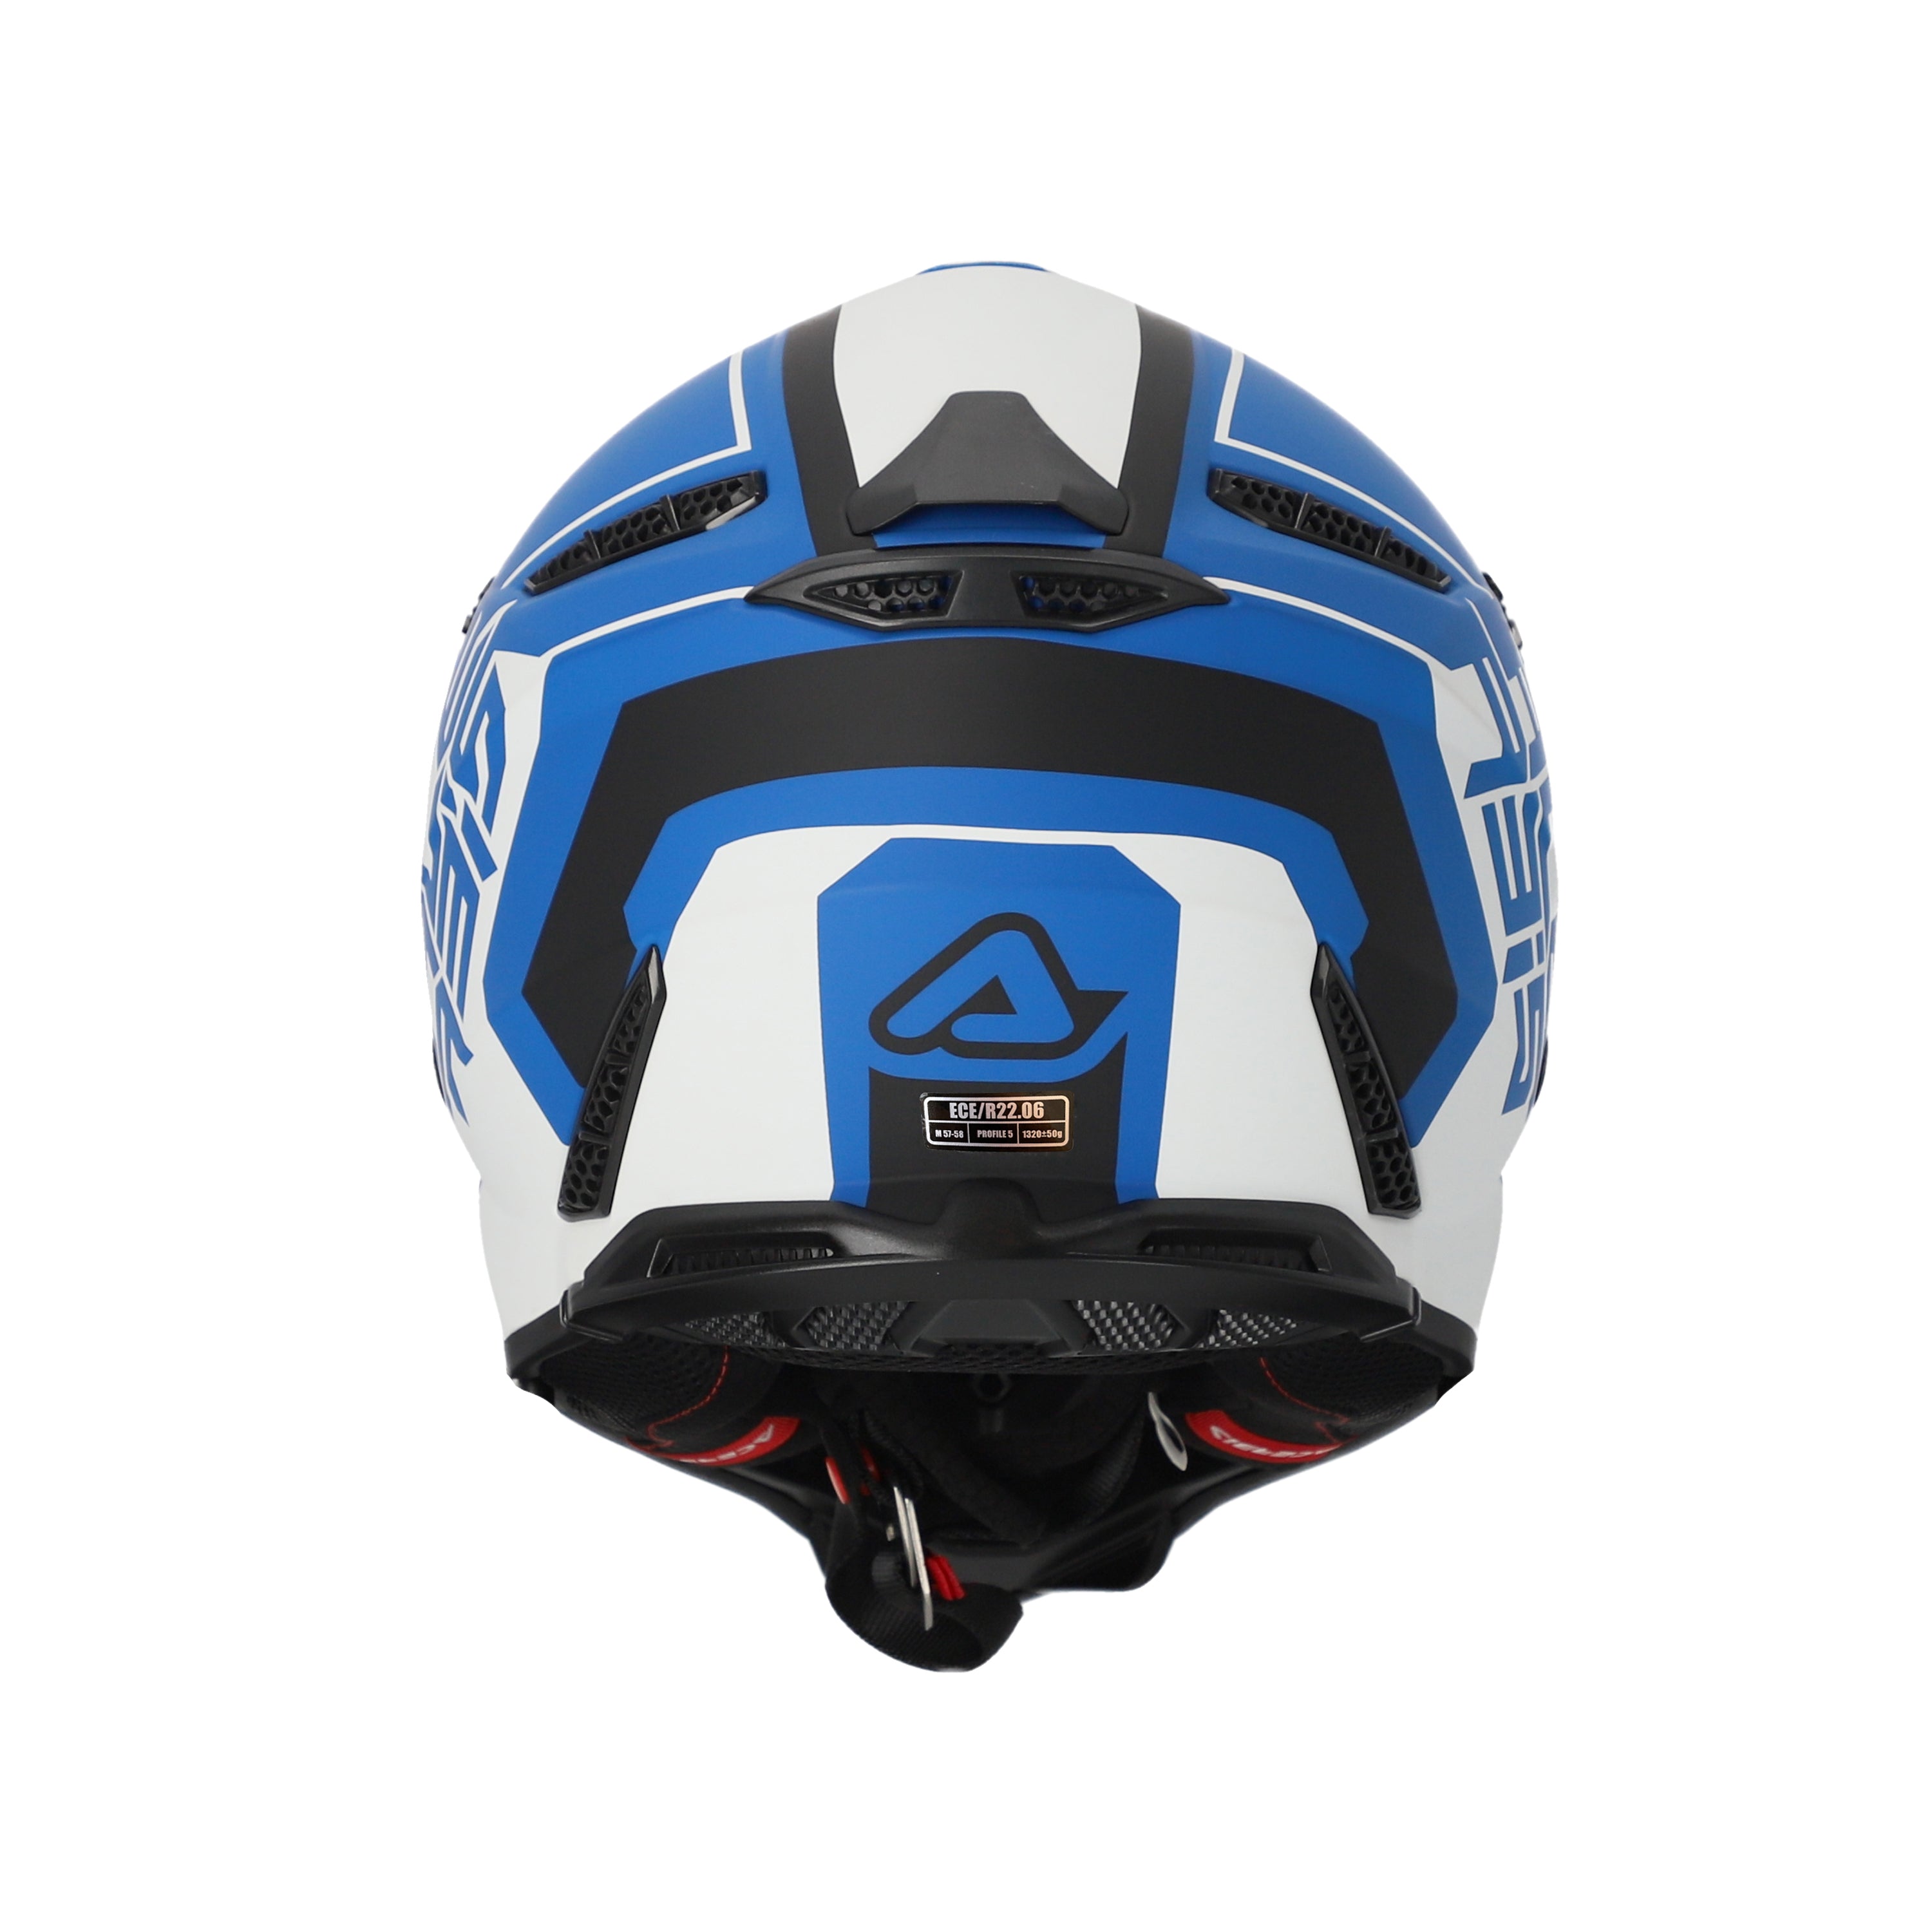 Acerbis Profile 5 MX Helmet Matte White/Blue